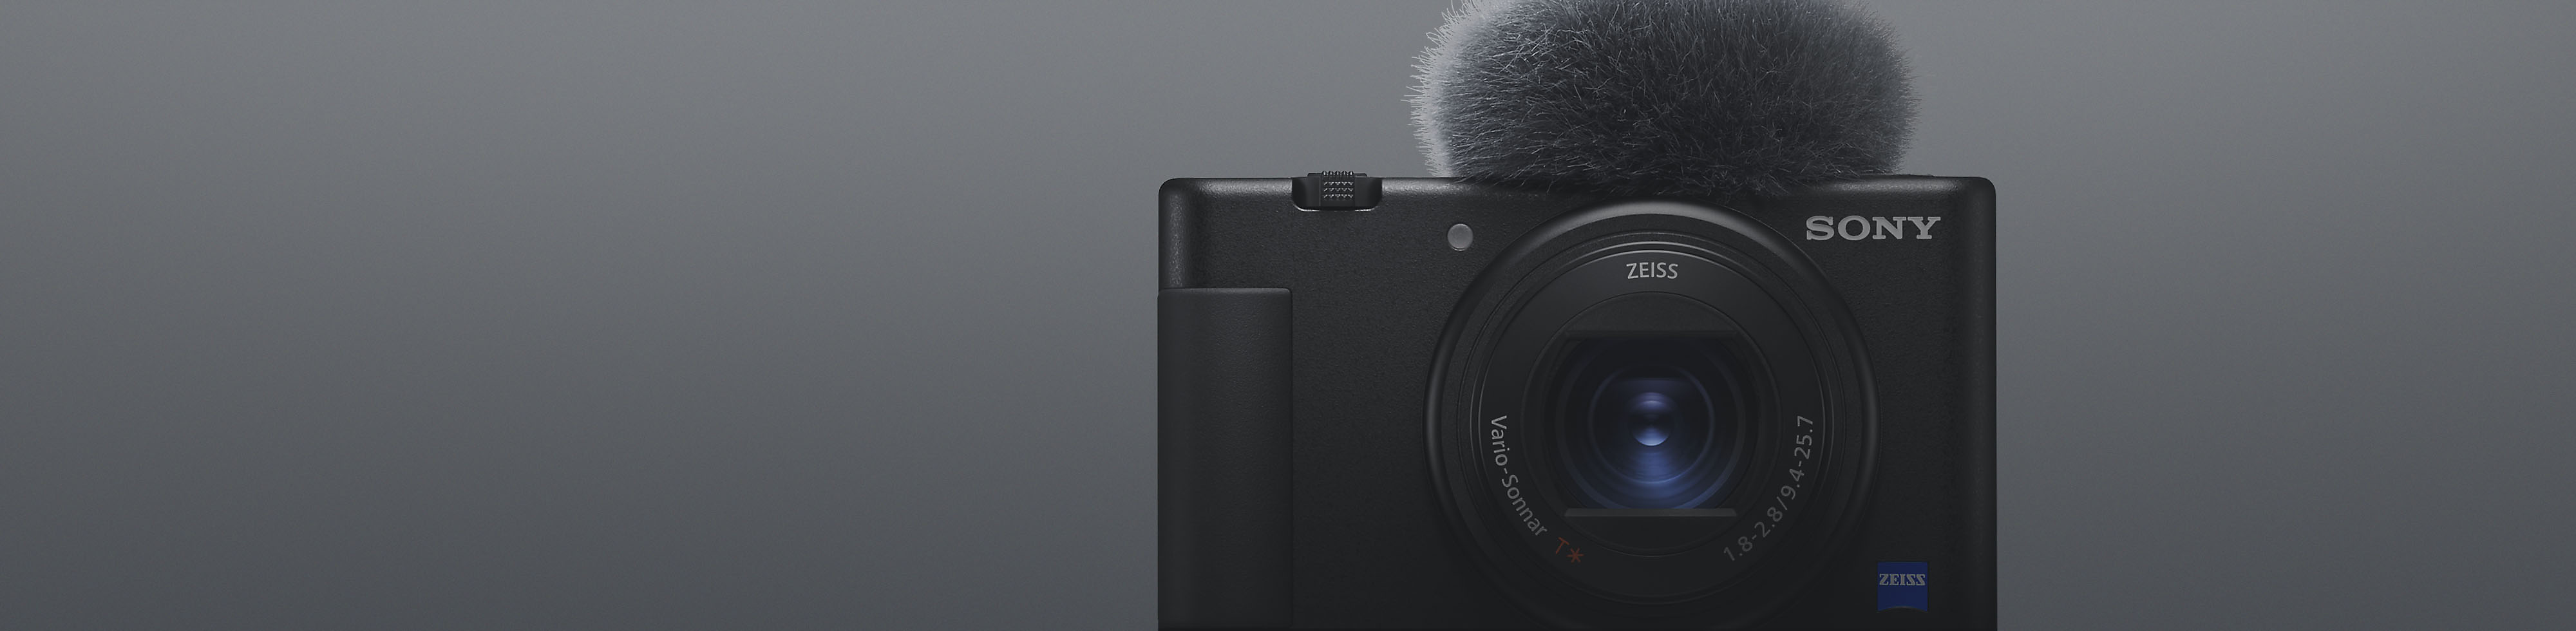 Vista frontal de una cámara compacta Sony negra con micrófono incorporado